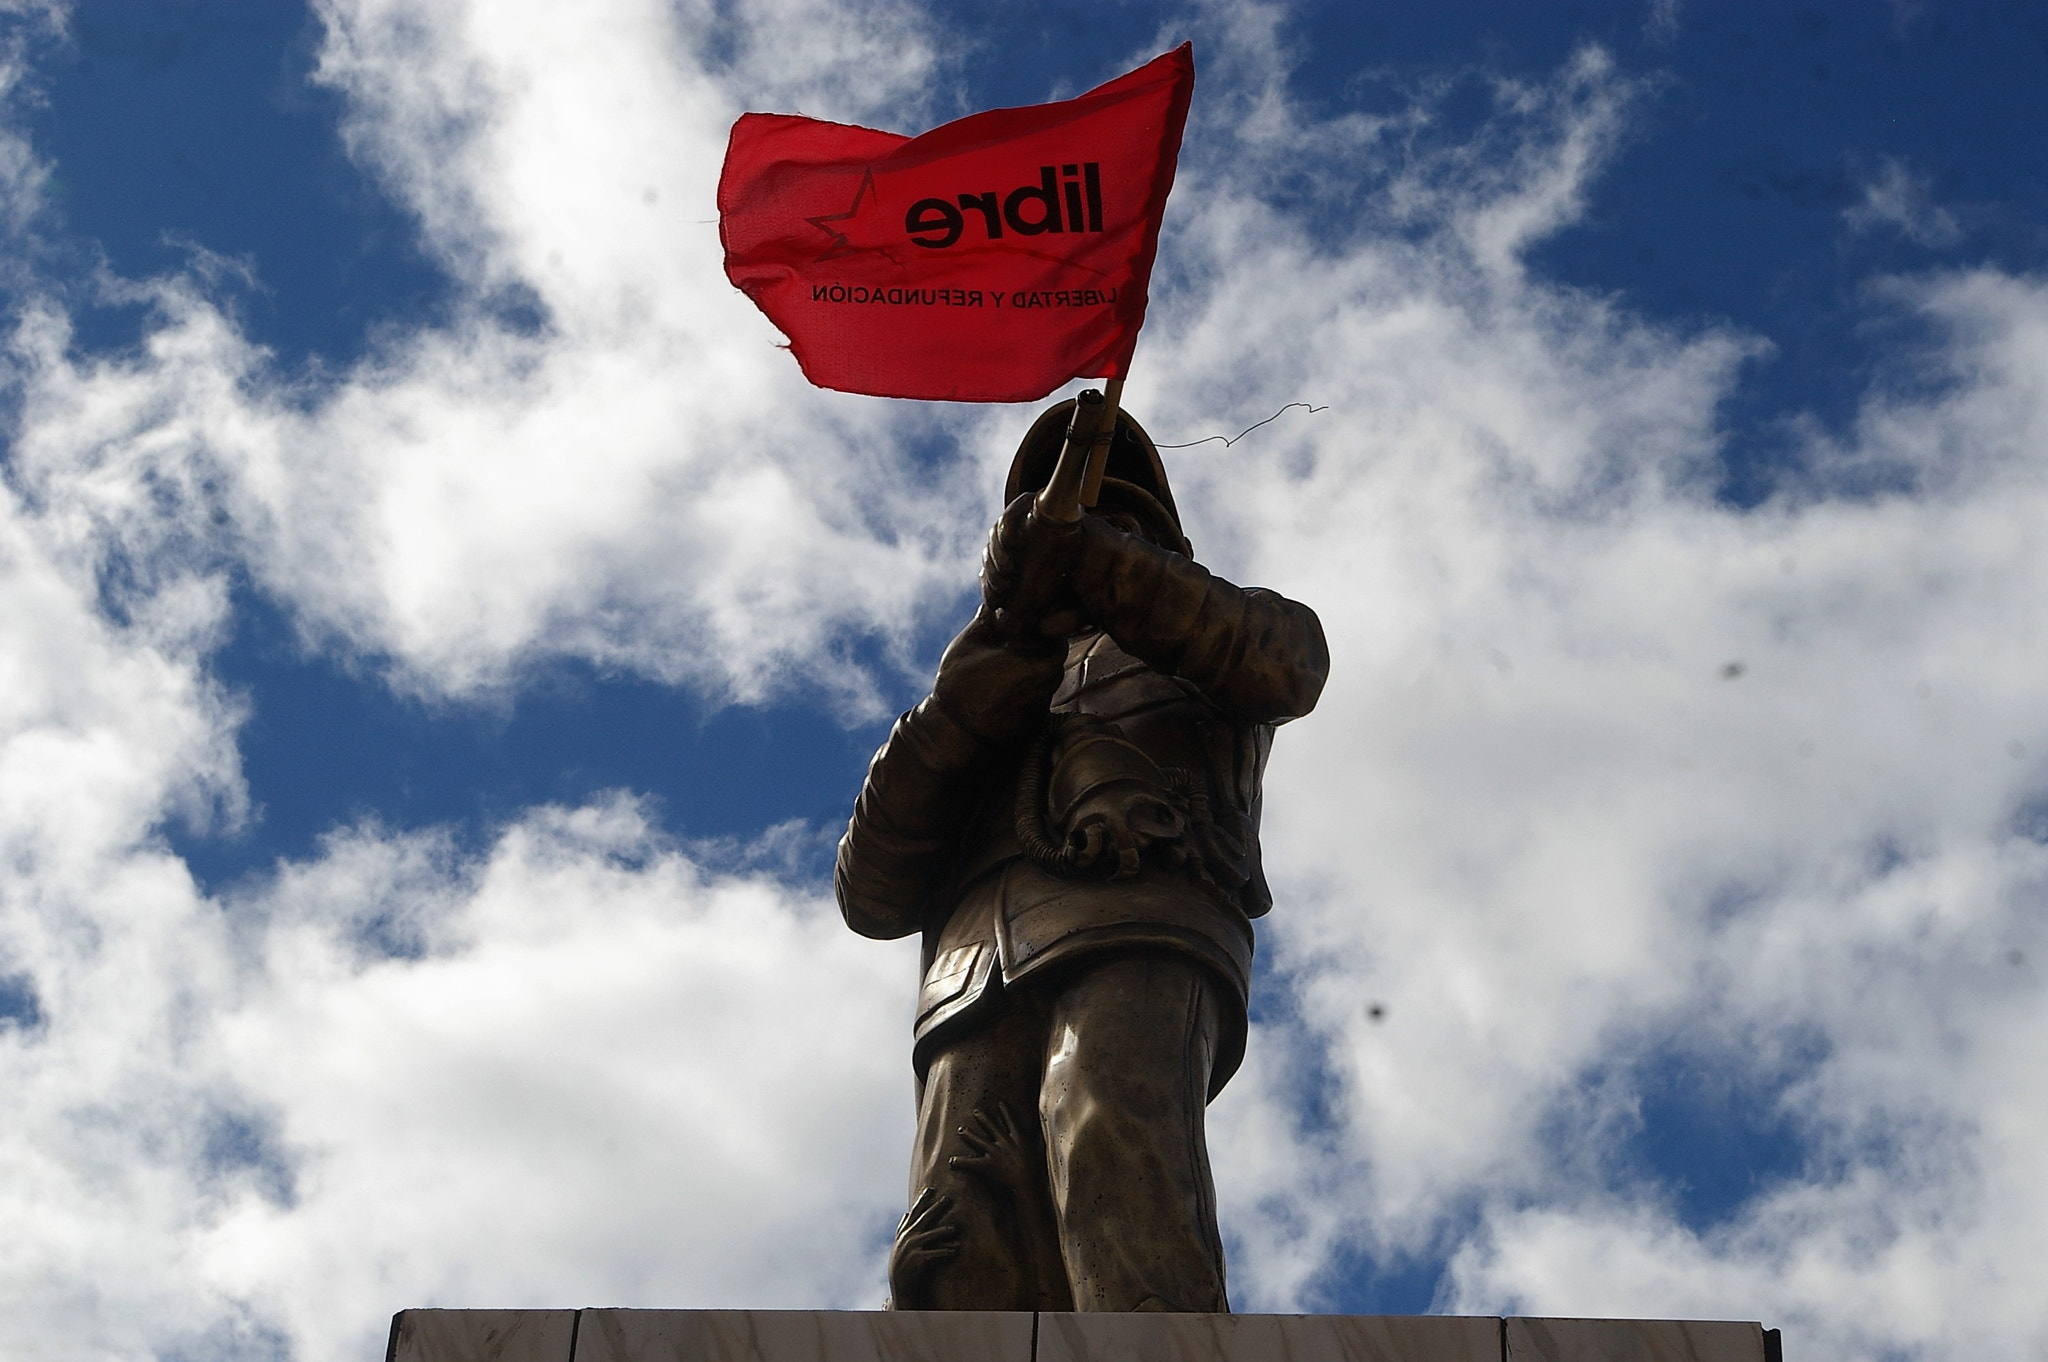 Pentax *ist DL sample photo. Estatua en bandera con bandera de libre photography